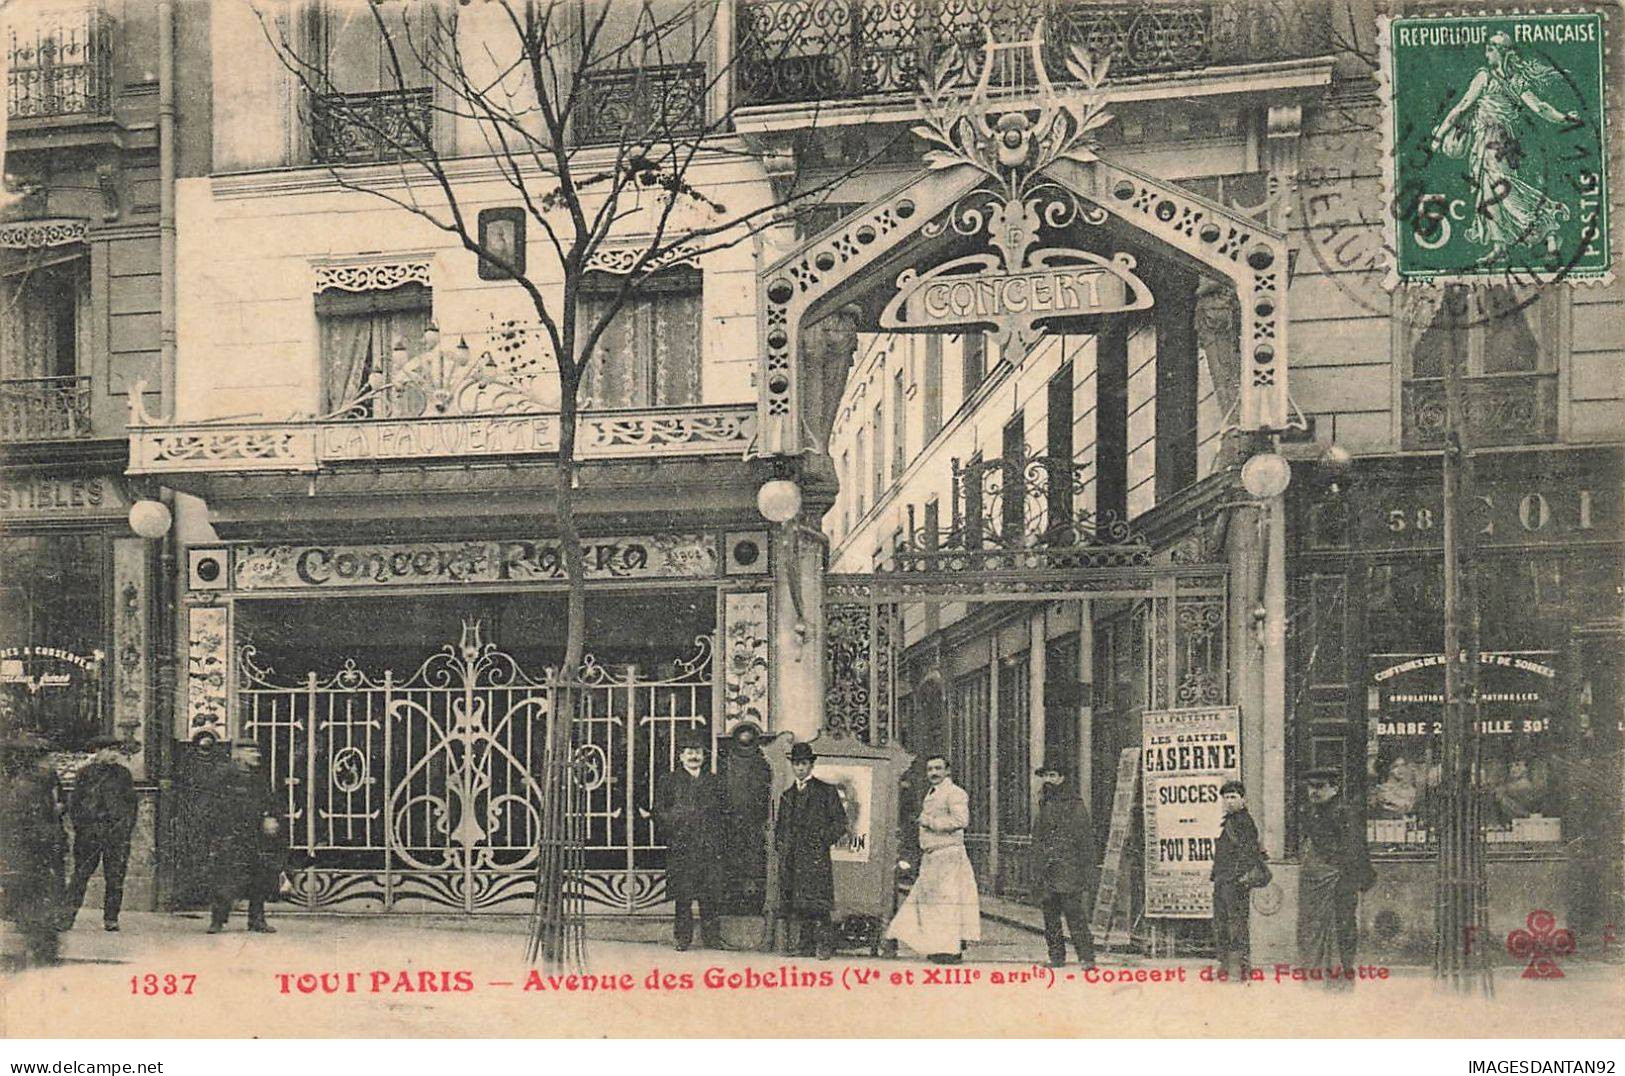 75013 TOUT PARIS #FG56572 AVENUE DES GOBELINS CONCERT DE LA FAUVETTE - Paris (13)